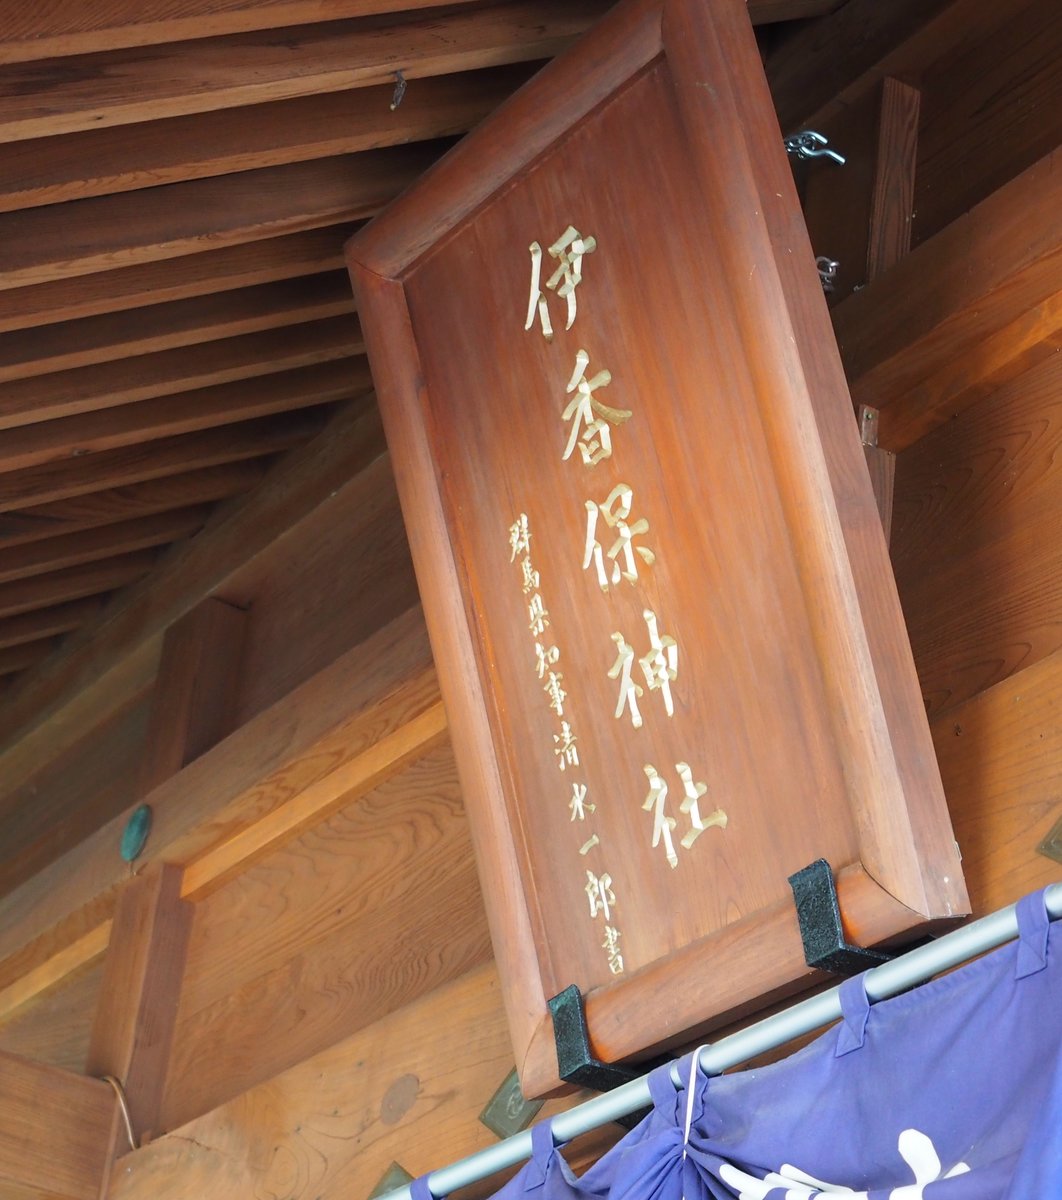 伊香保神社